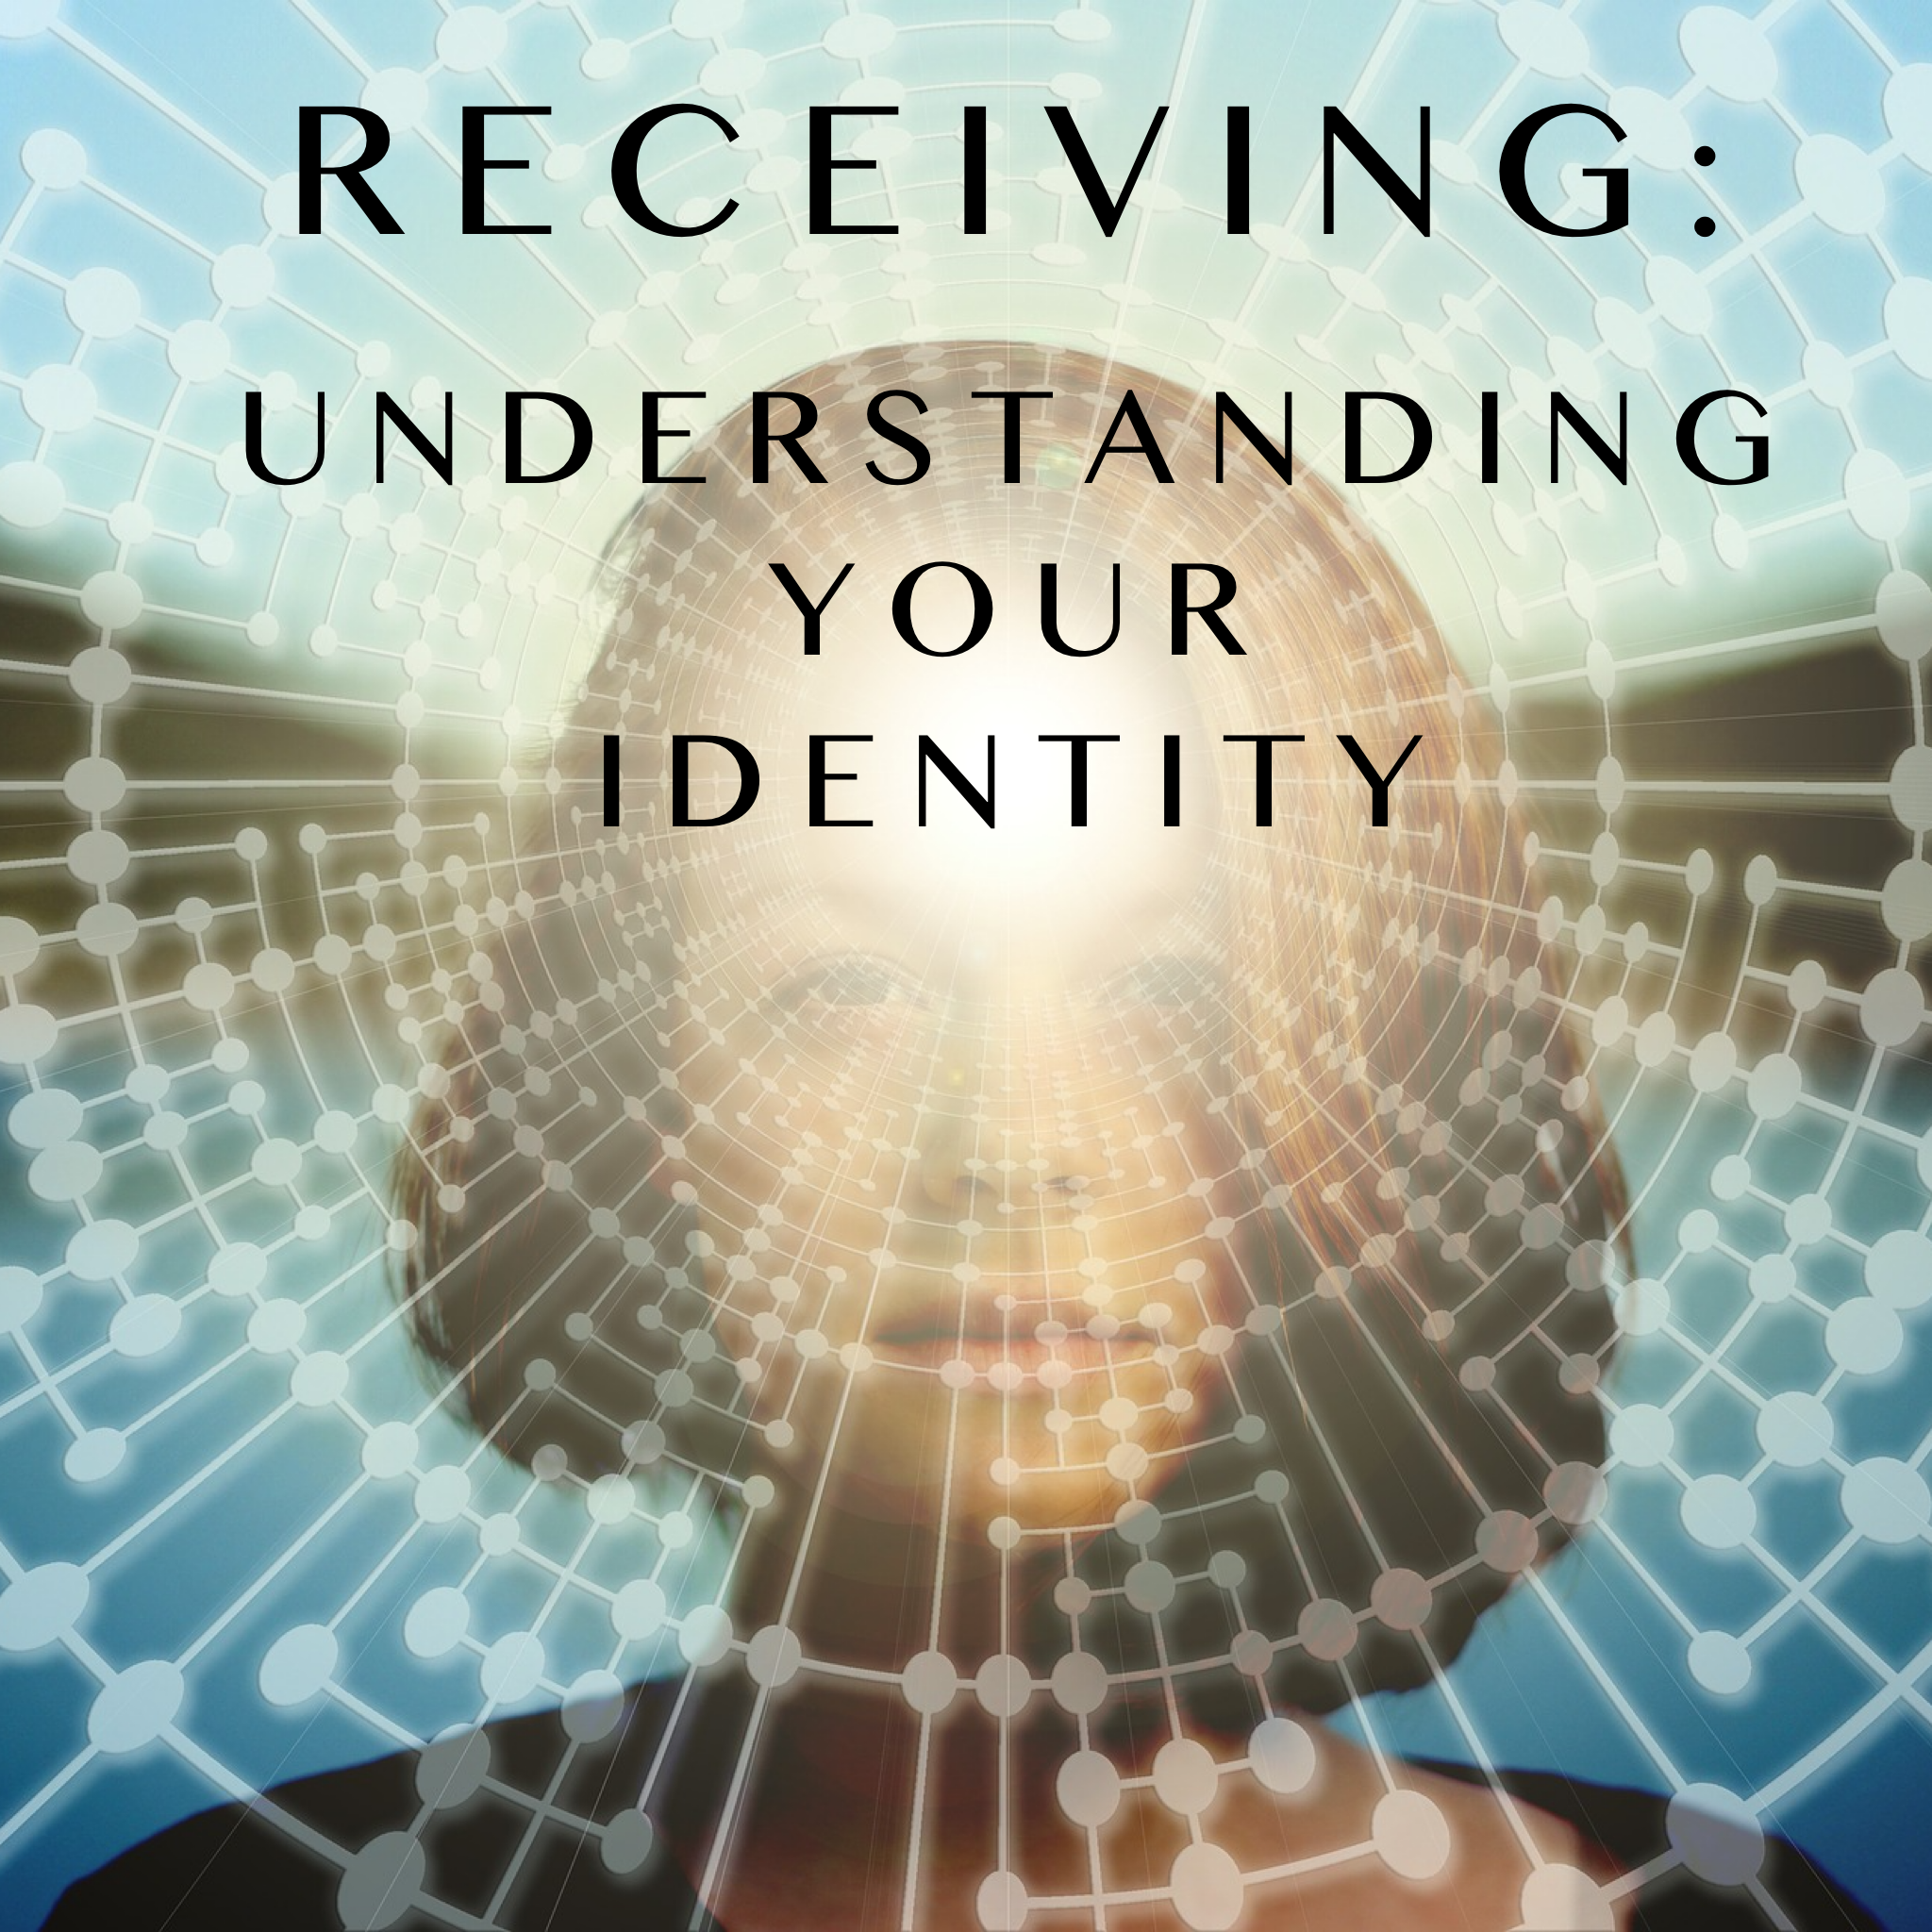 Receiving: Understanding your Identity - 4/25/21